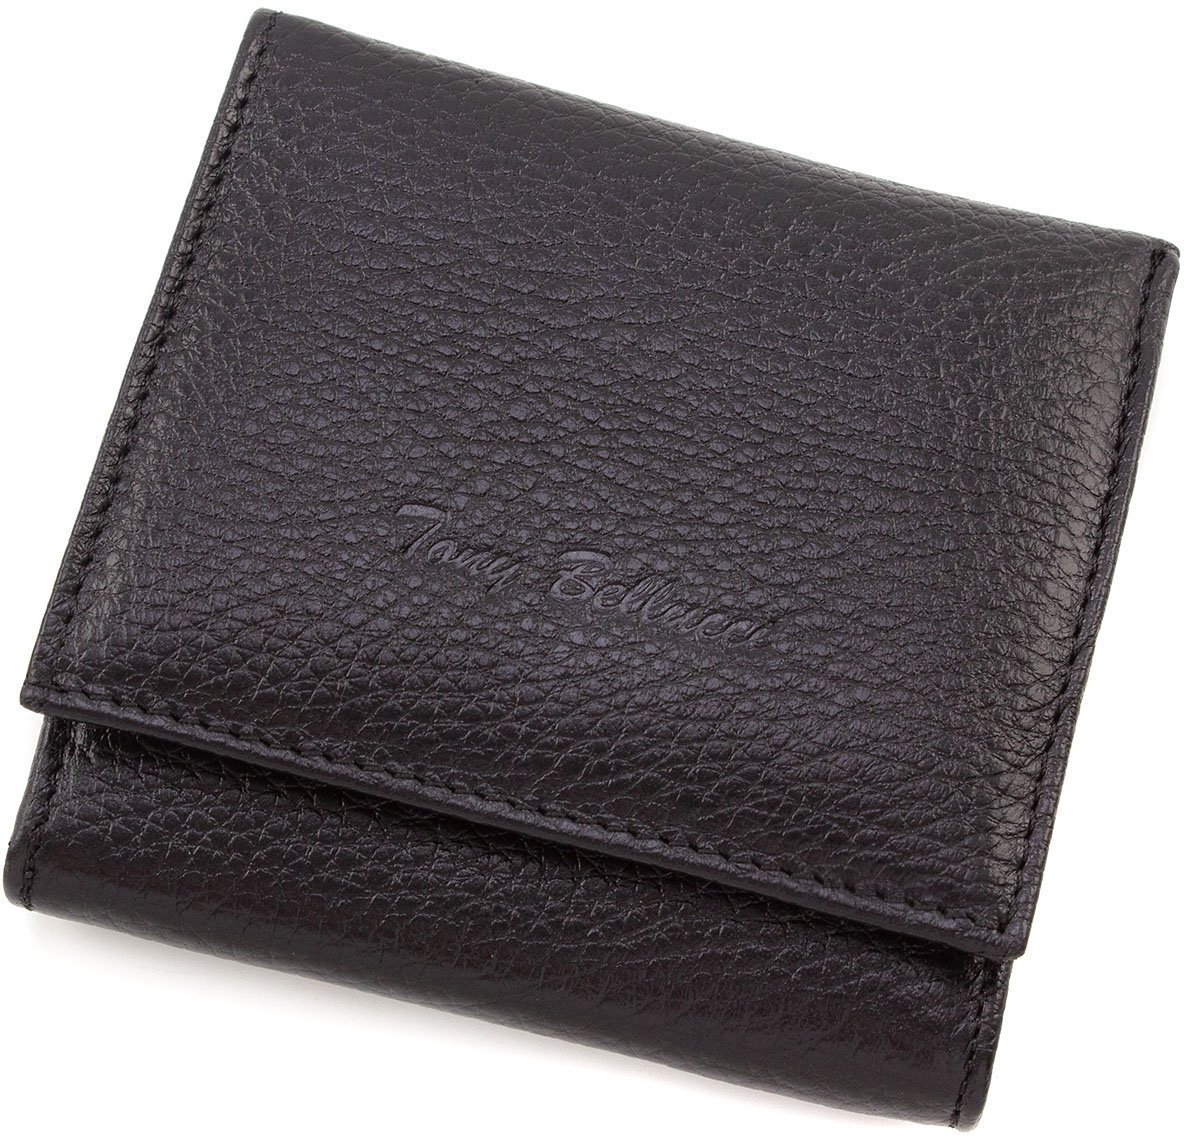 Фирменный кошелек черно-красного цвета из натуральной кожи Tony Bellucci (10780)